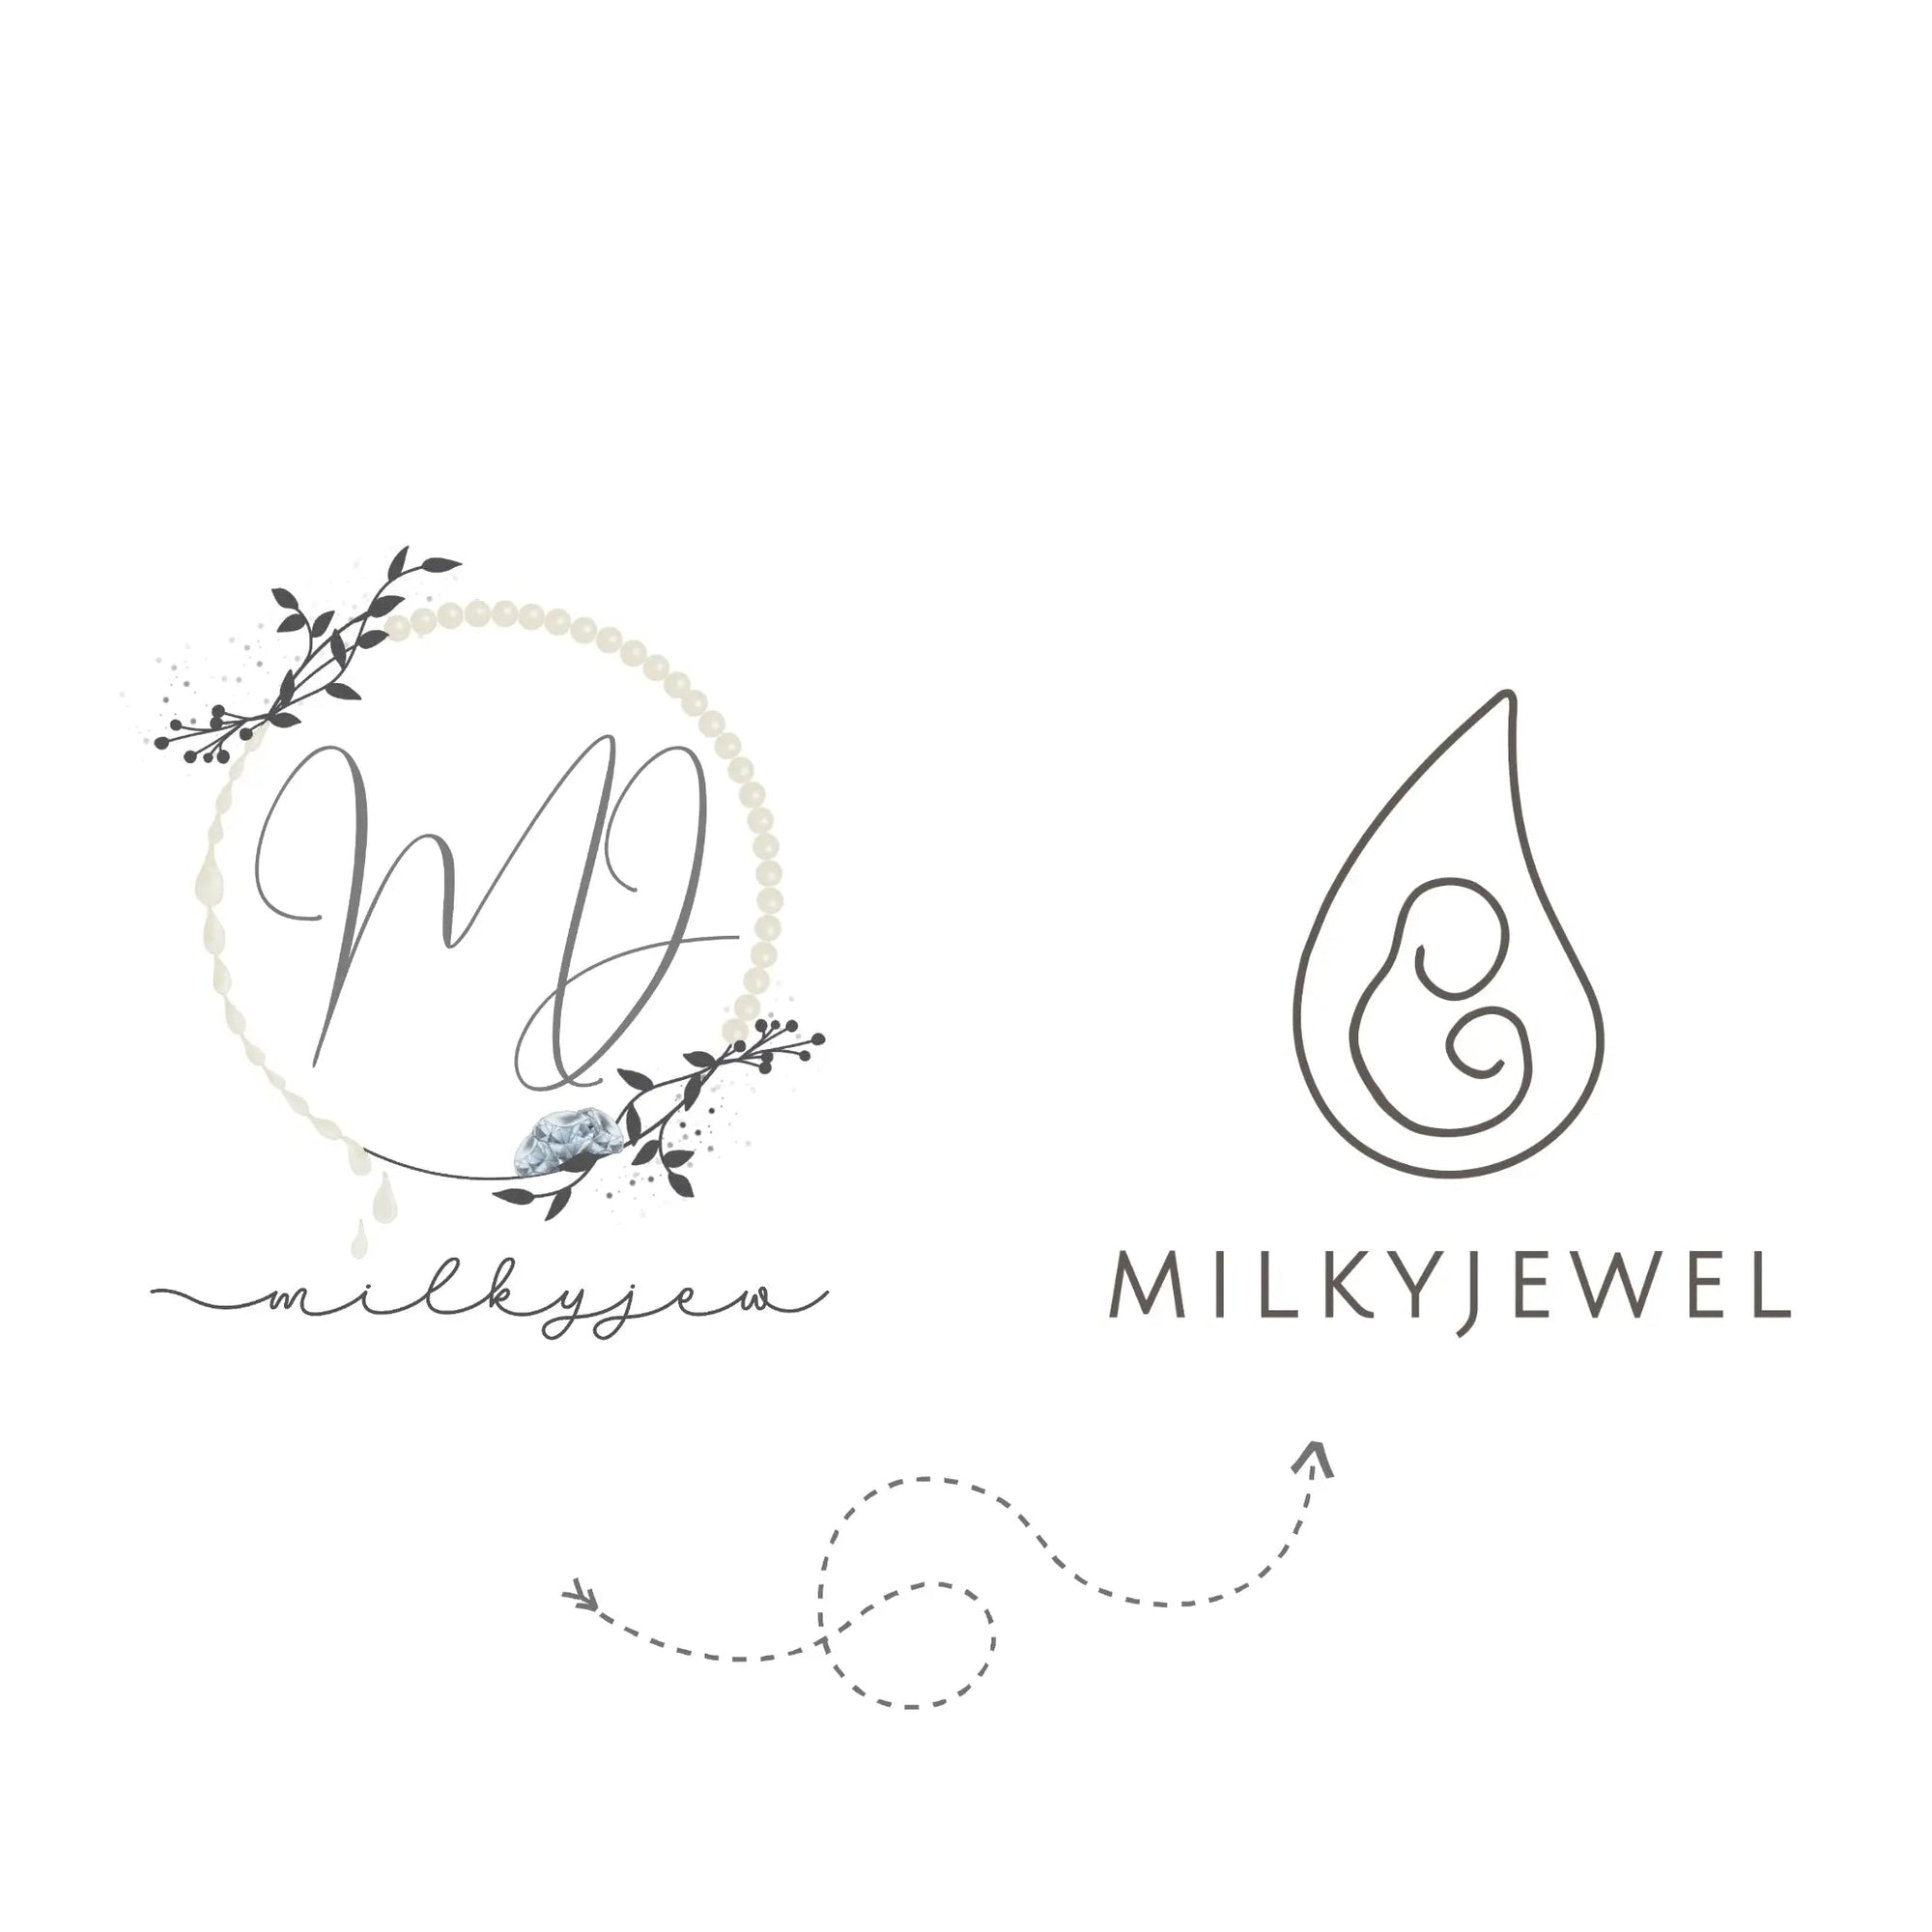 "Milkyjew" becomes "Milkyjewel" - Milkyjewel